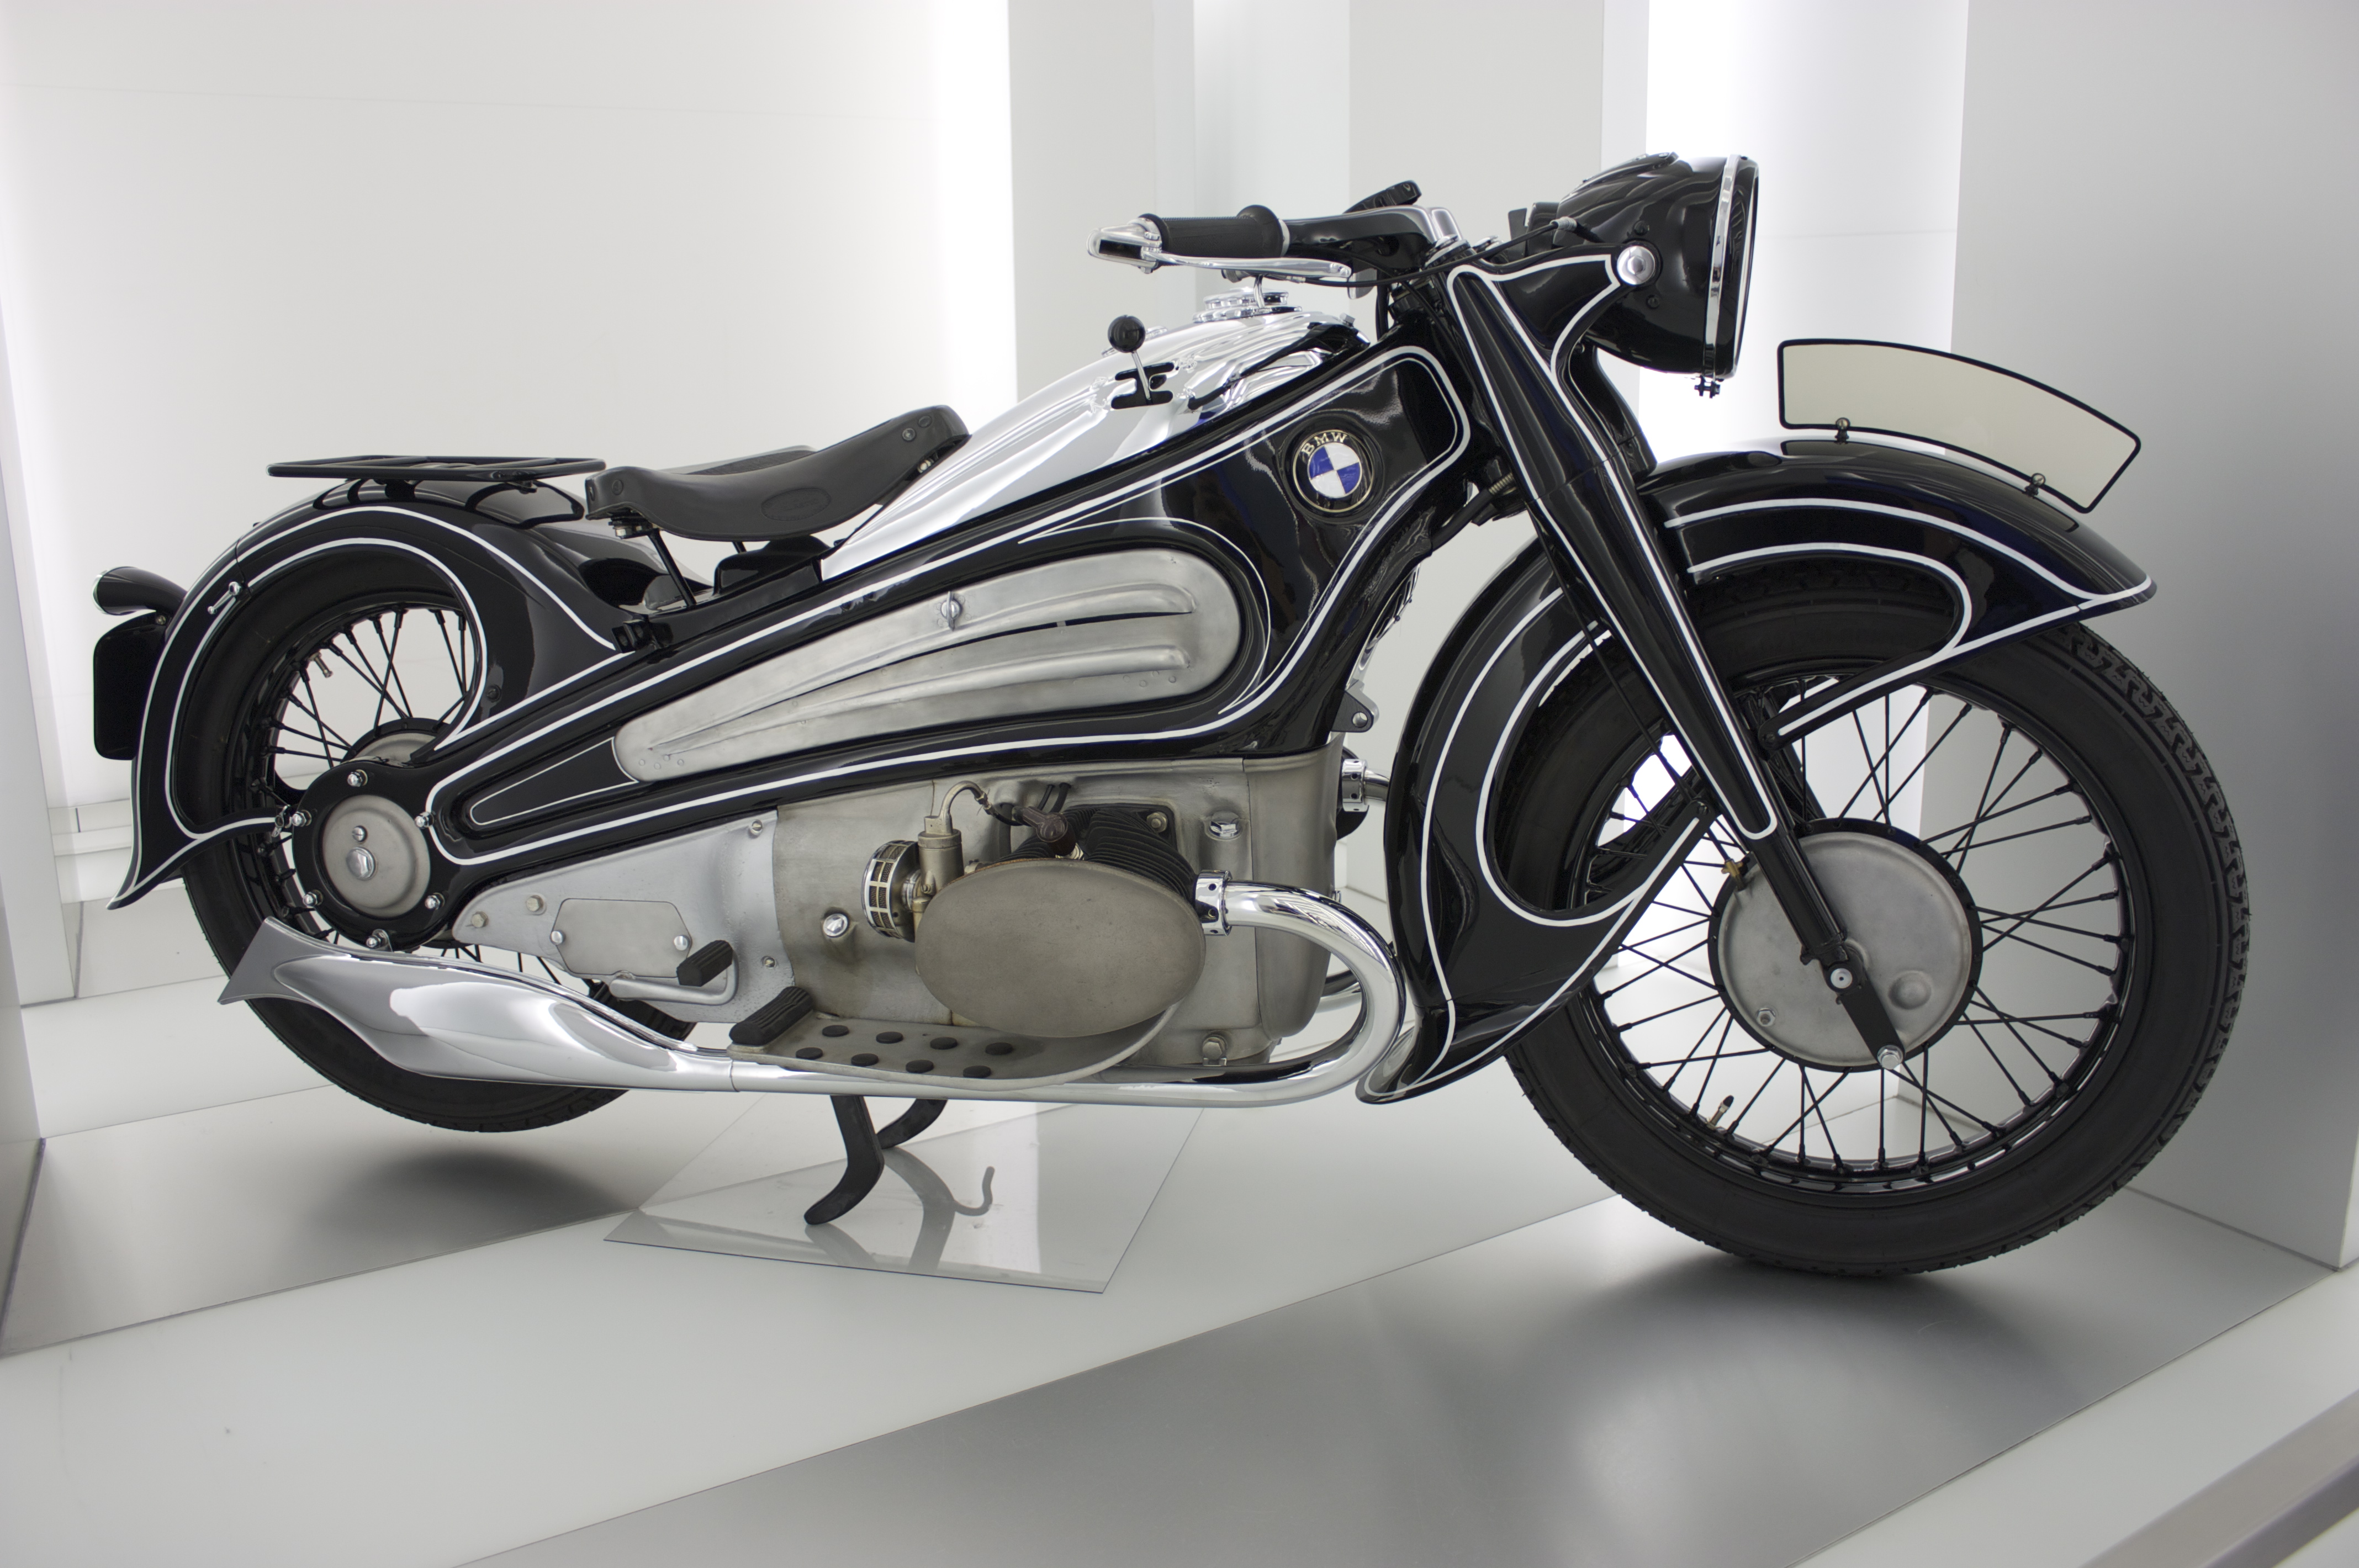 これが80年前のデザイン 時を超えて復元された幻のバイク Bmw R7 がかっこいい Lawrence E Ride X Lifestyle A